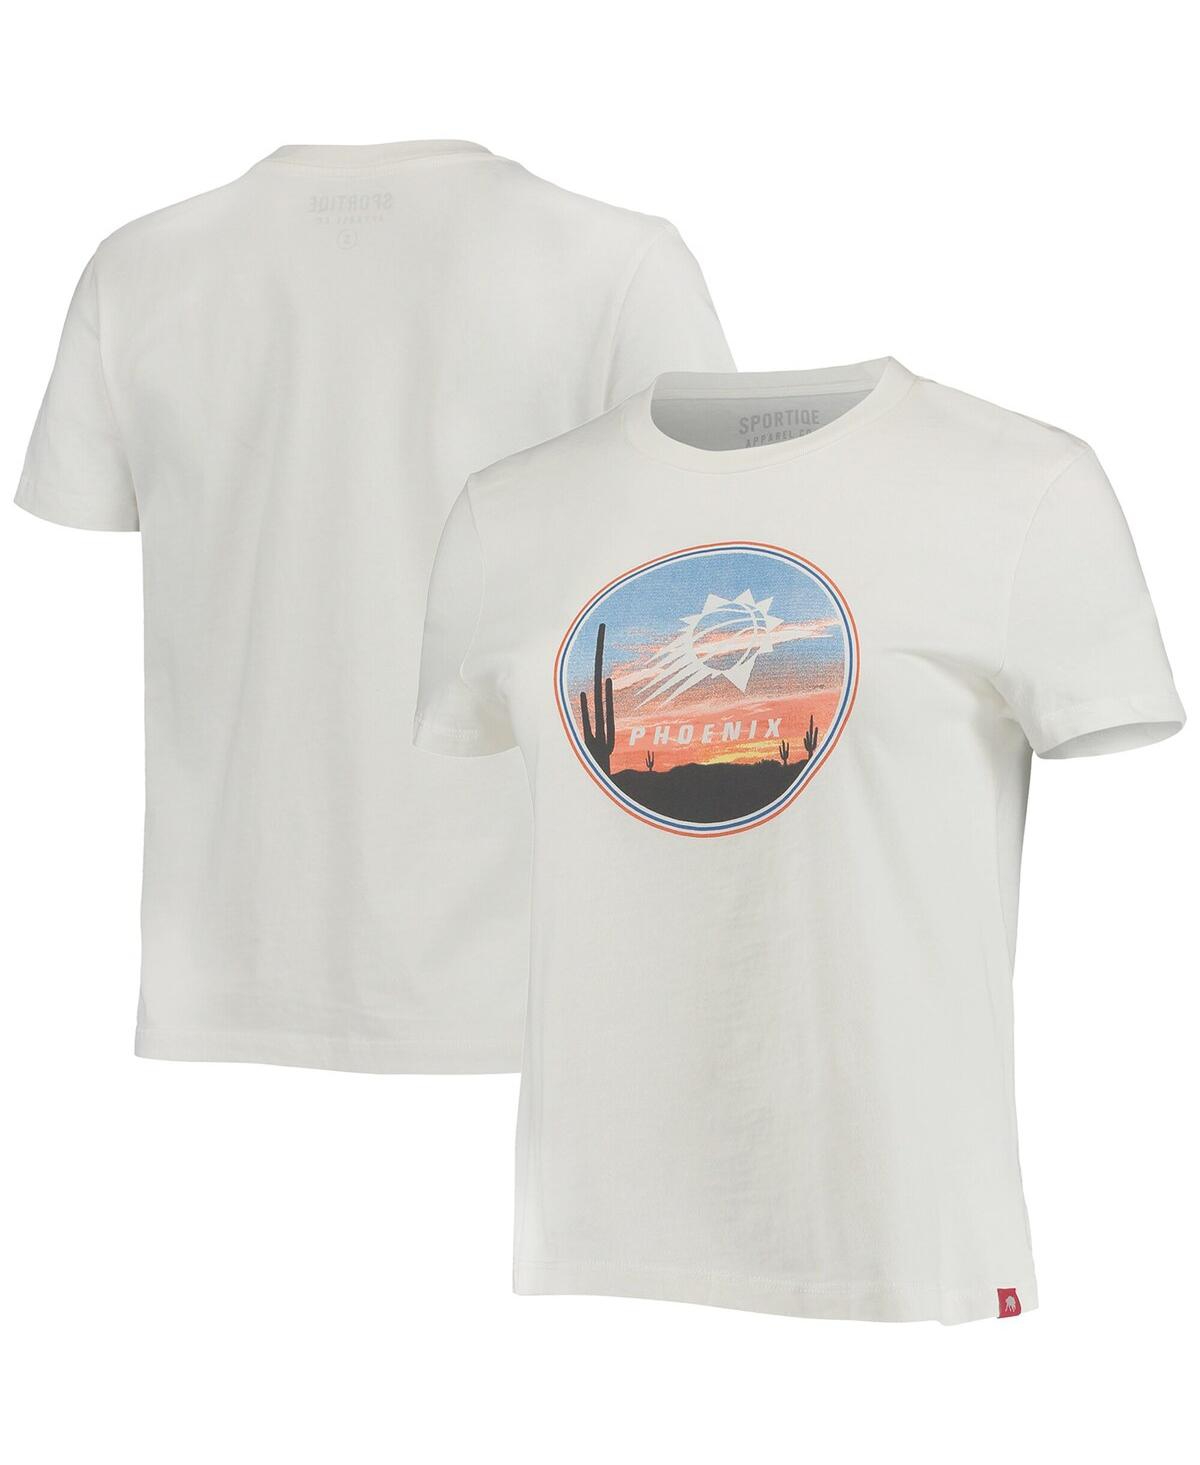 Sportiqe Women's  White Phoenix Suns Arcadia T-shirt